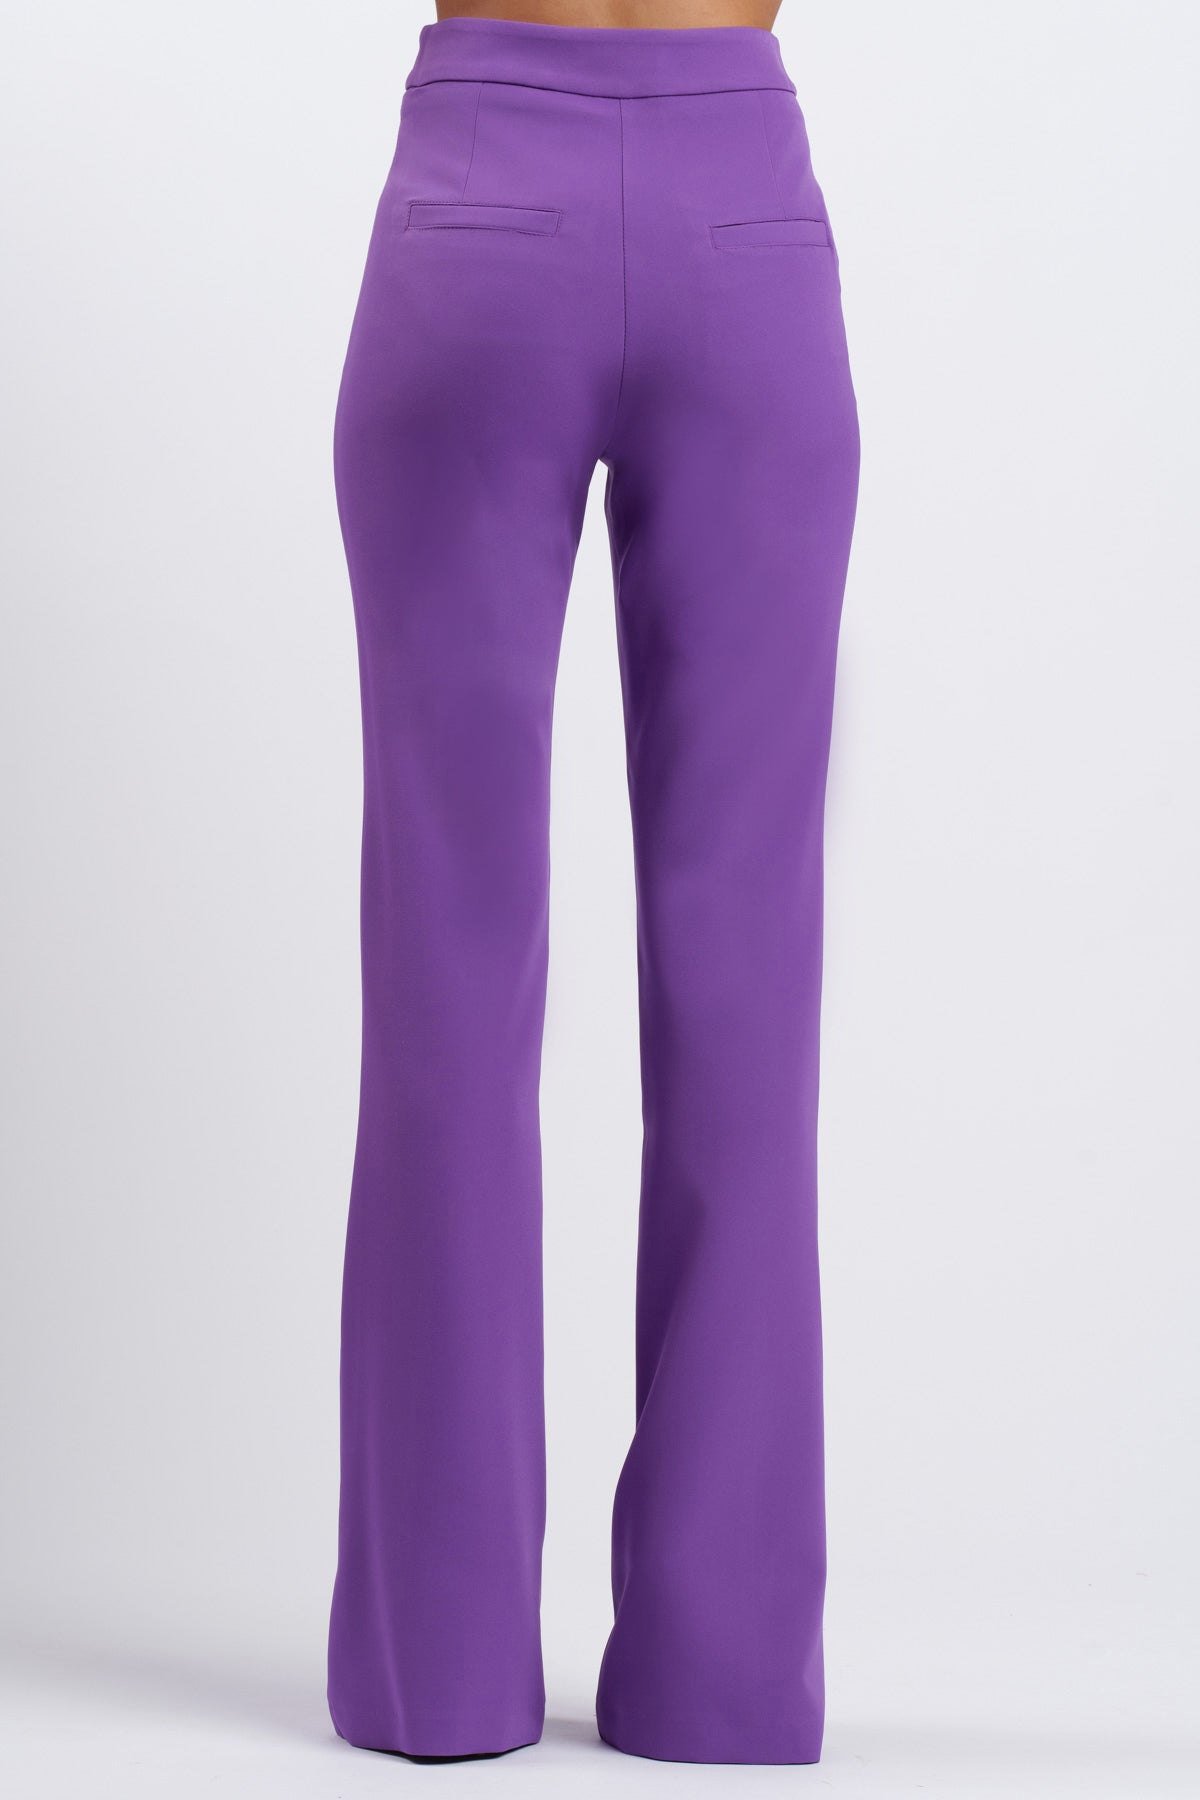 Pantalone Mezza Zampa Libra Violet